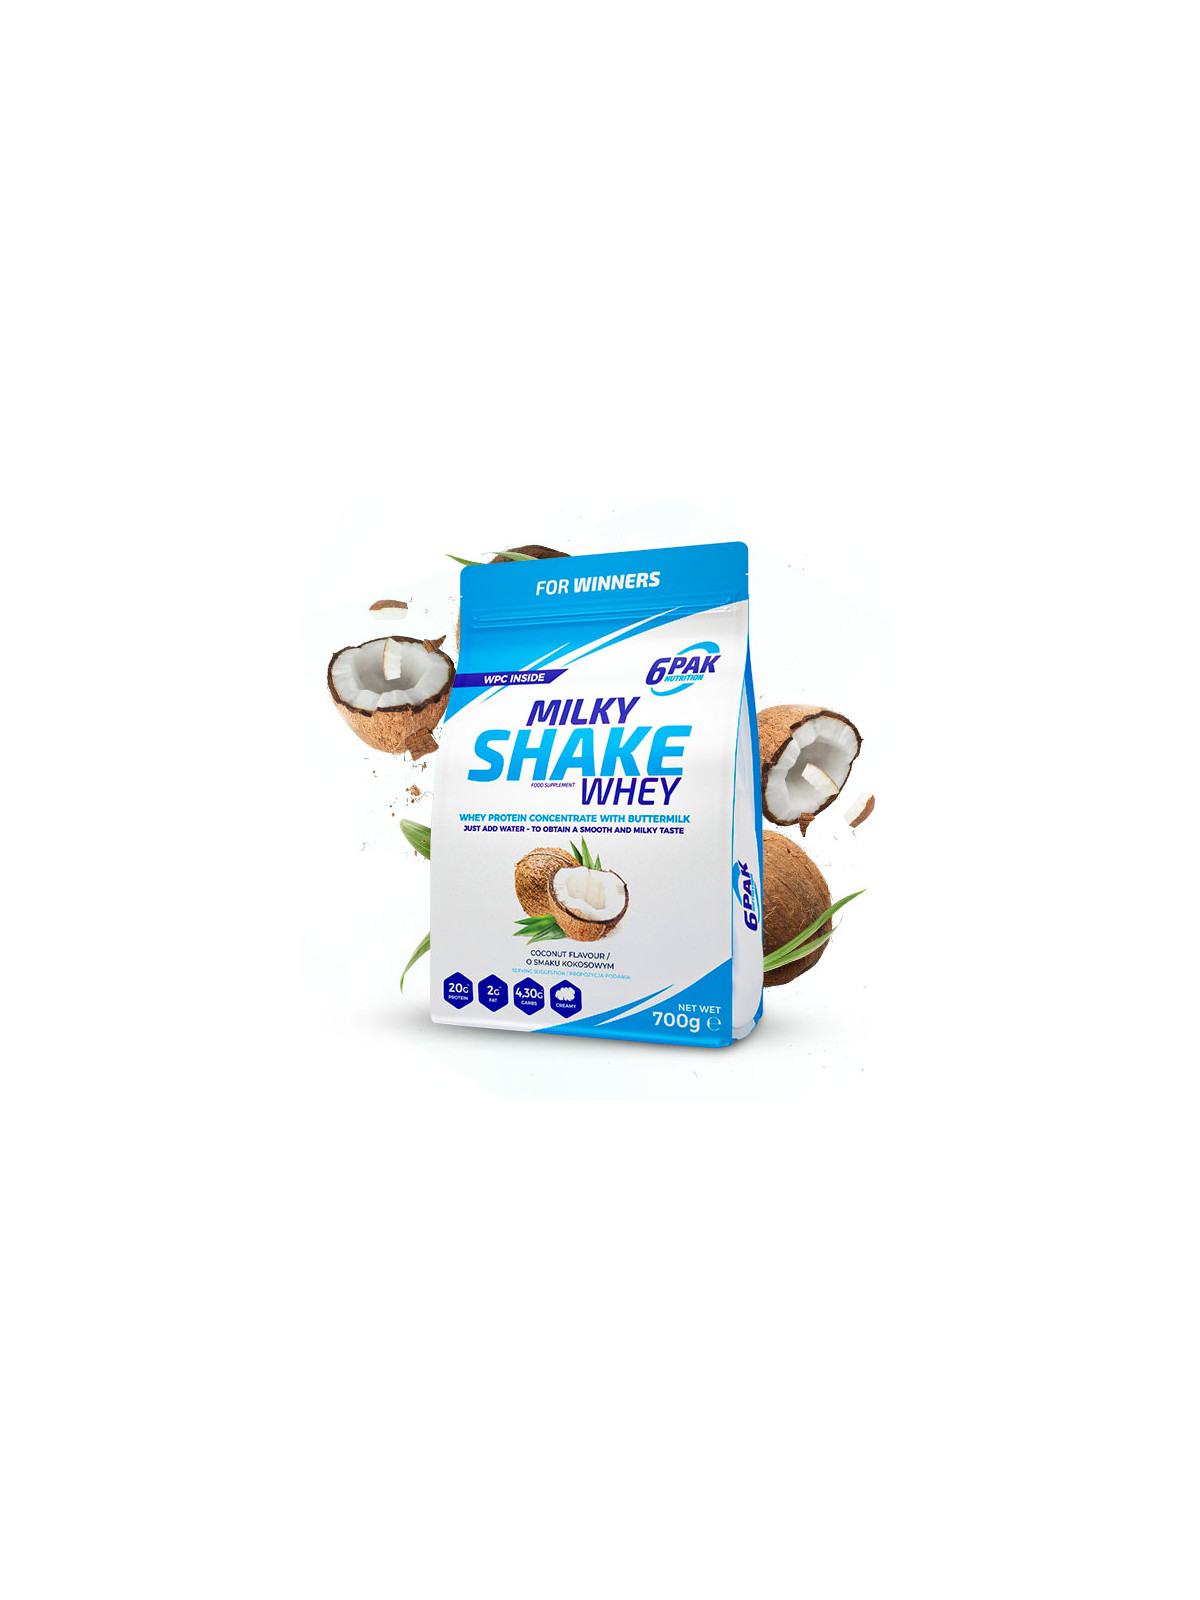 Odżywka białkowa Milky Shake Whey - 700g - Coconut